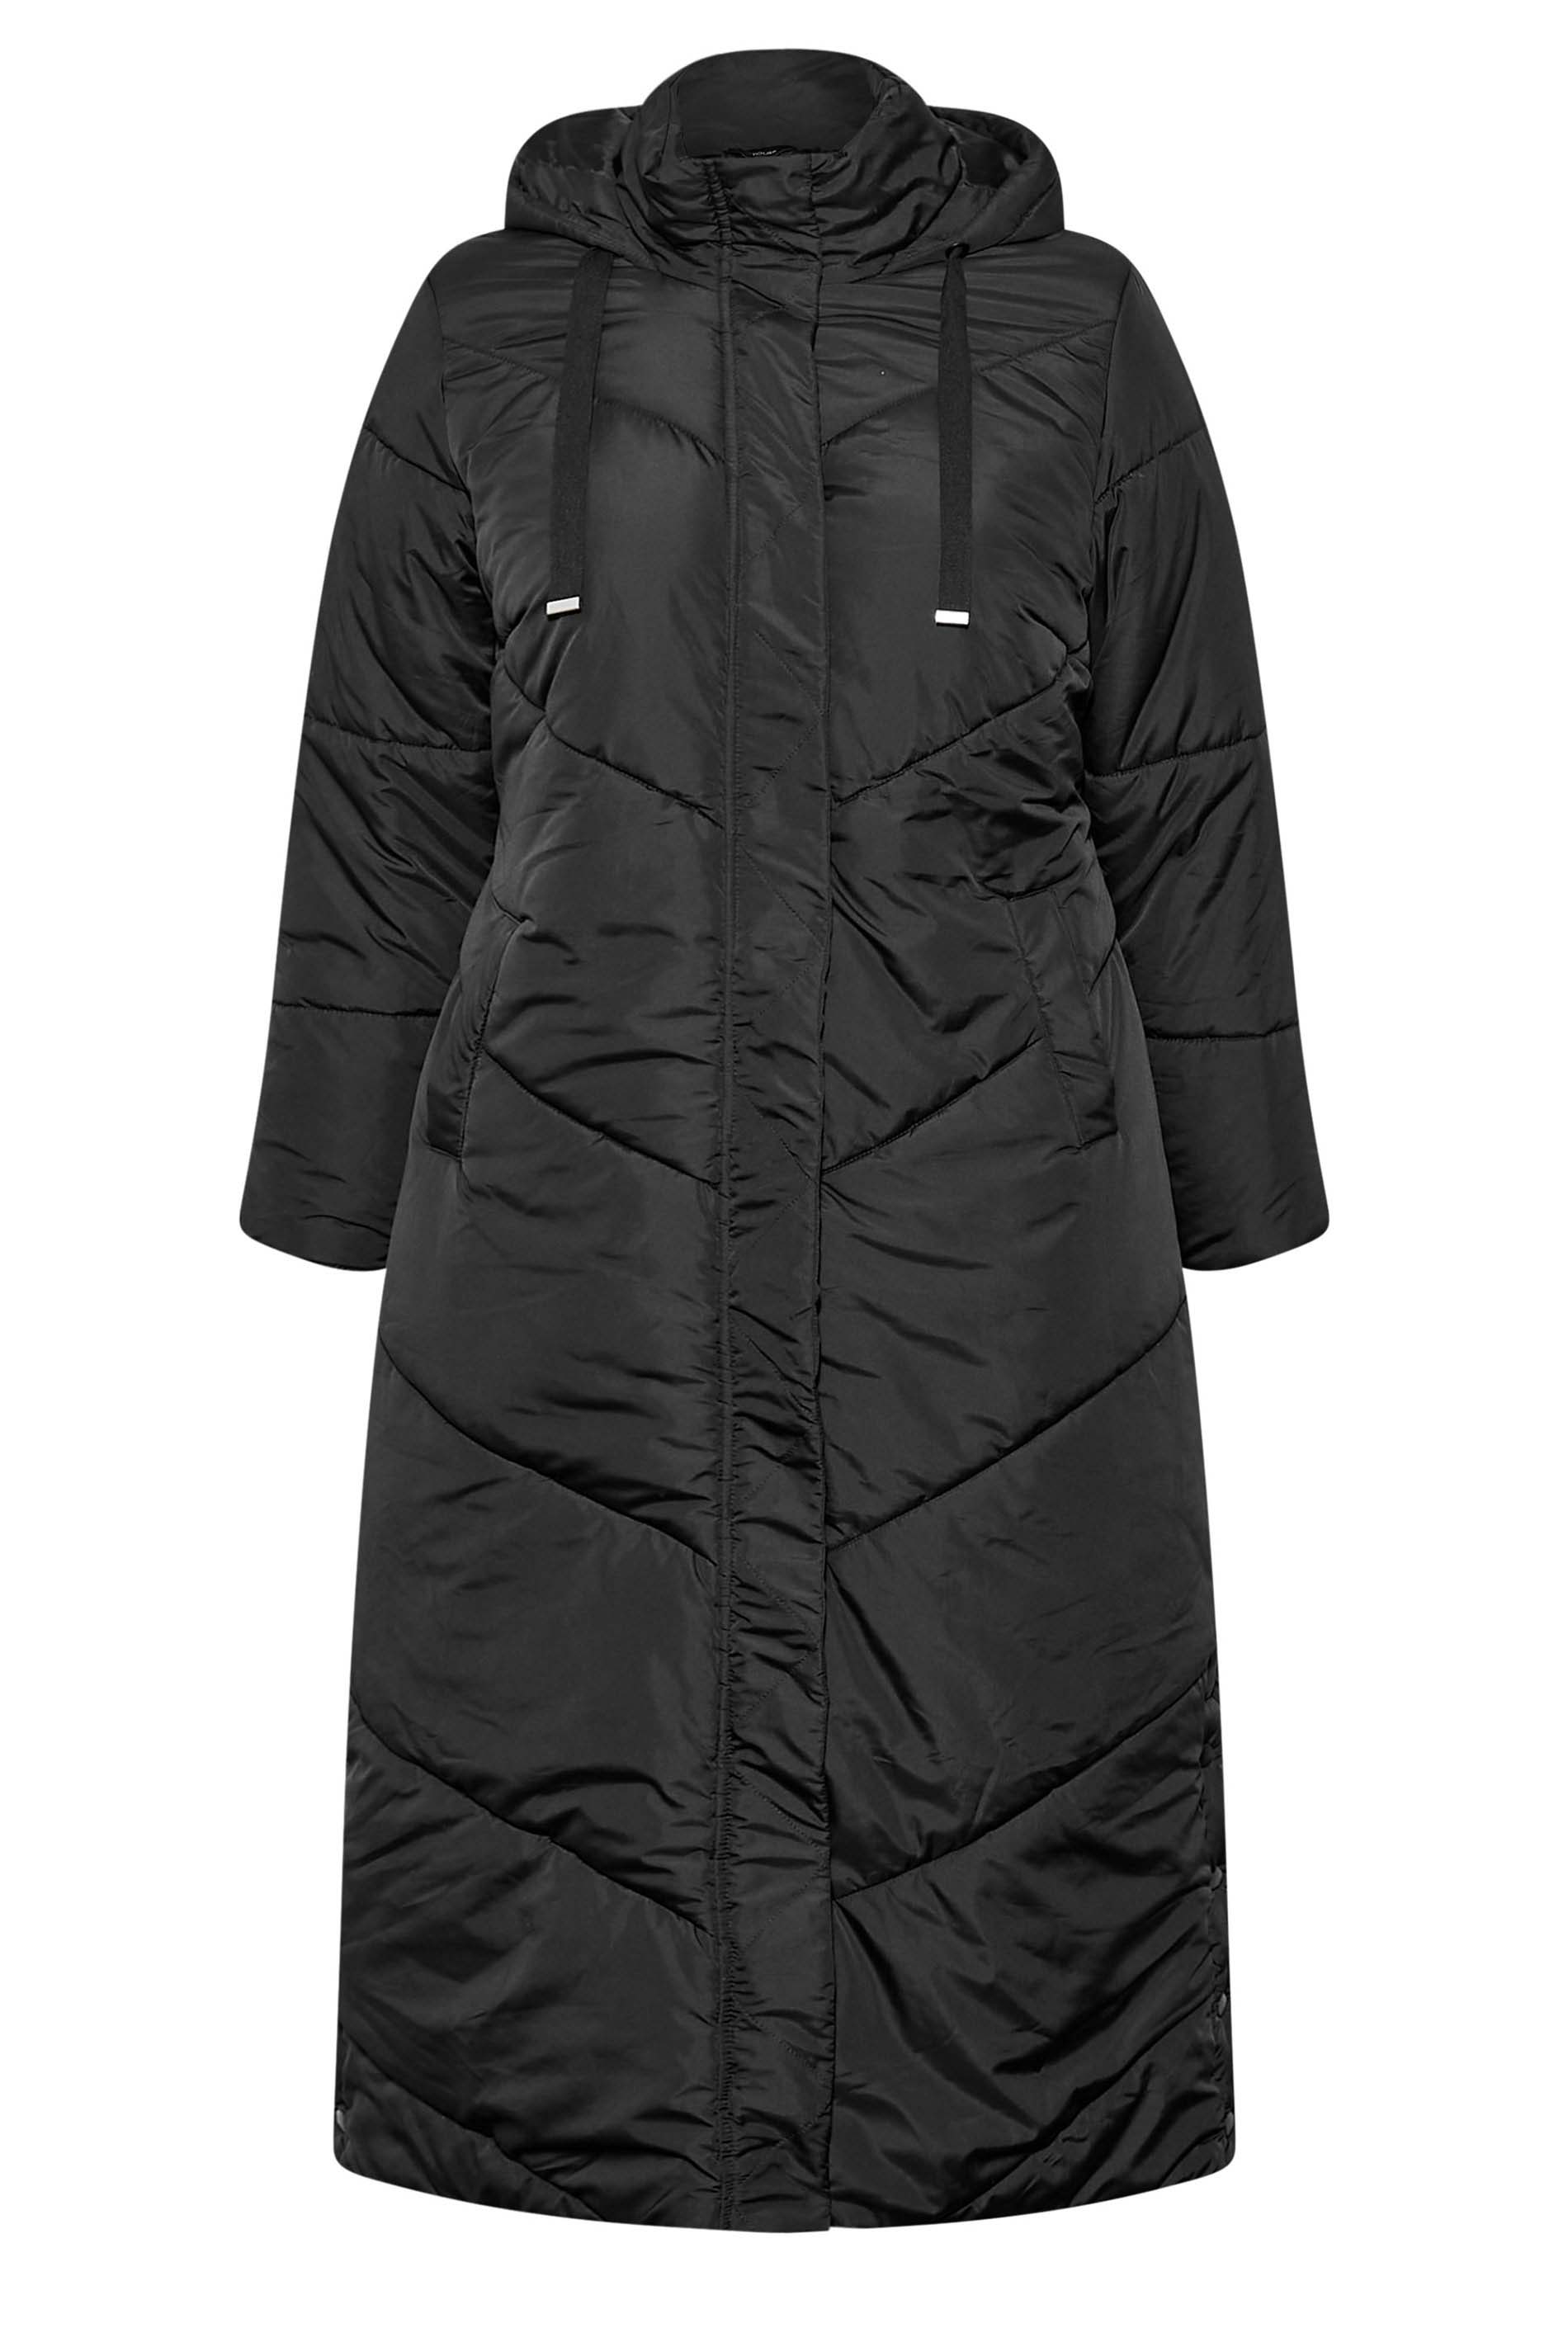 Plus Size Black Padded Maxi Coat | Yours Clothing